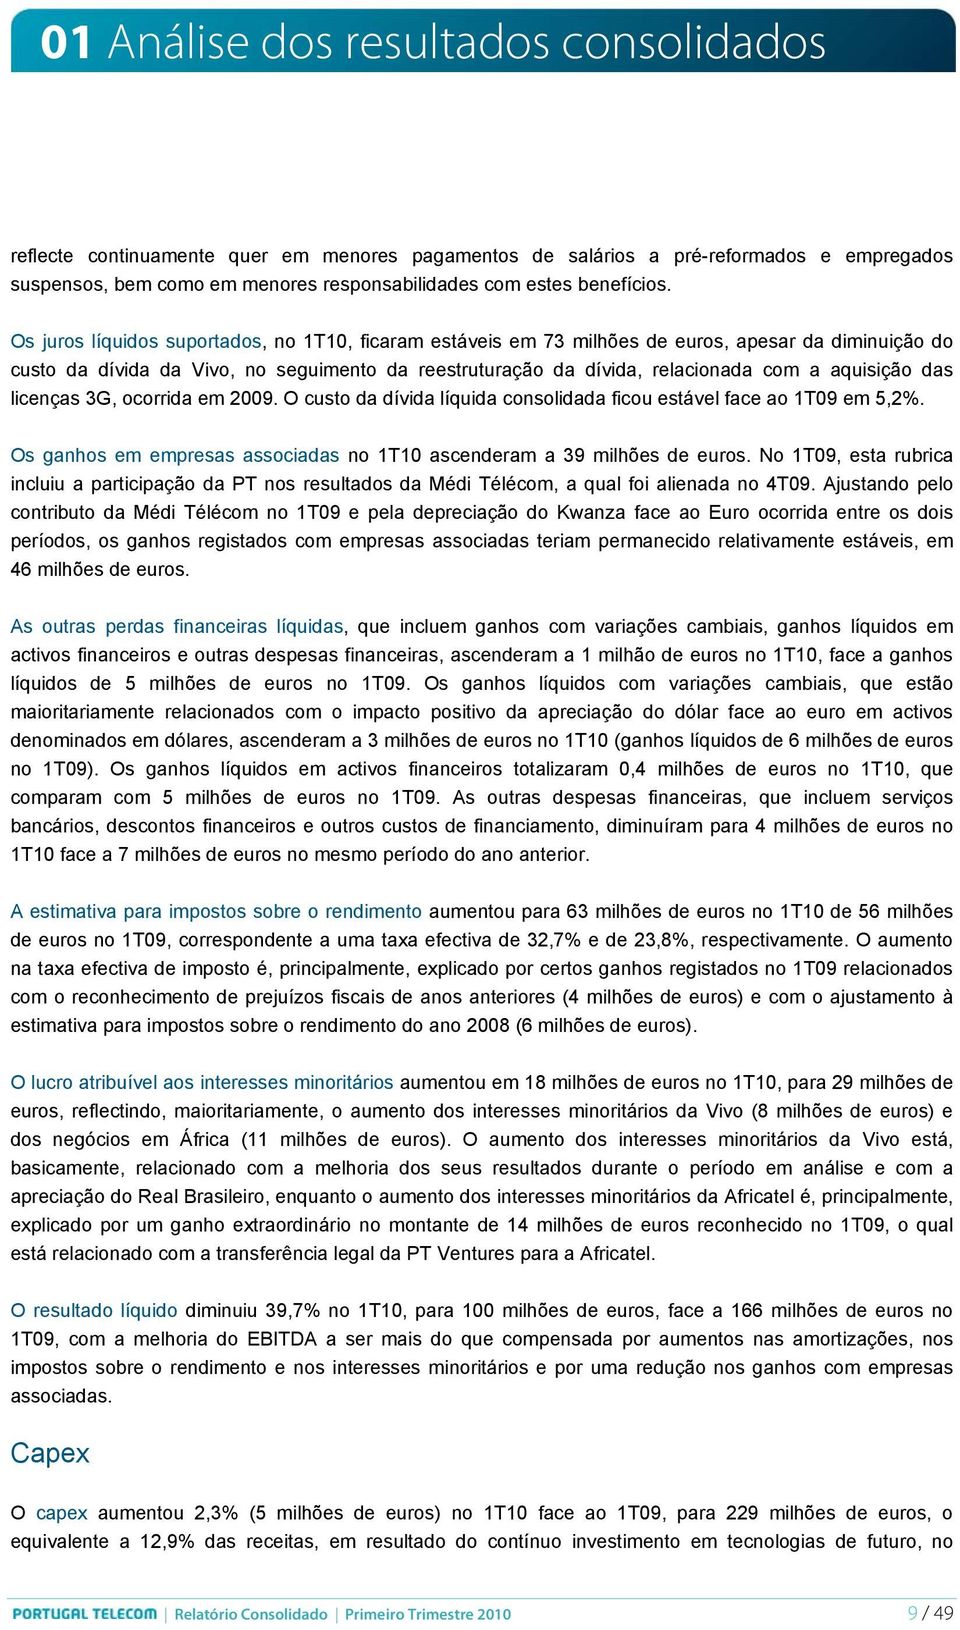 Os juros líquidos suportados, no 1T10, ficaram estáveis em 73 milhões de, apesar da diminuição do custo da dívida da Vivo, no seguimento da reestruturação da dívida, relacionada com a aquisição das